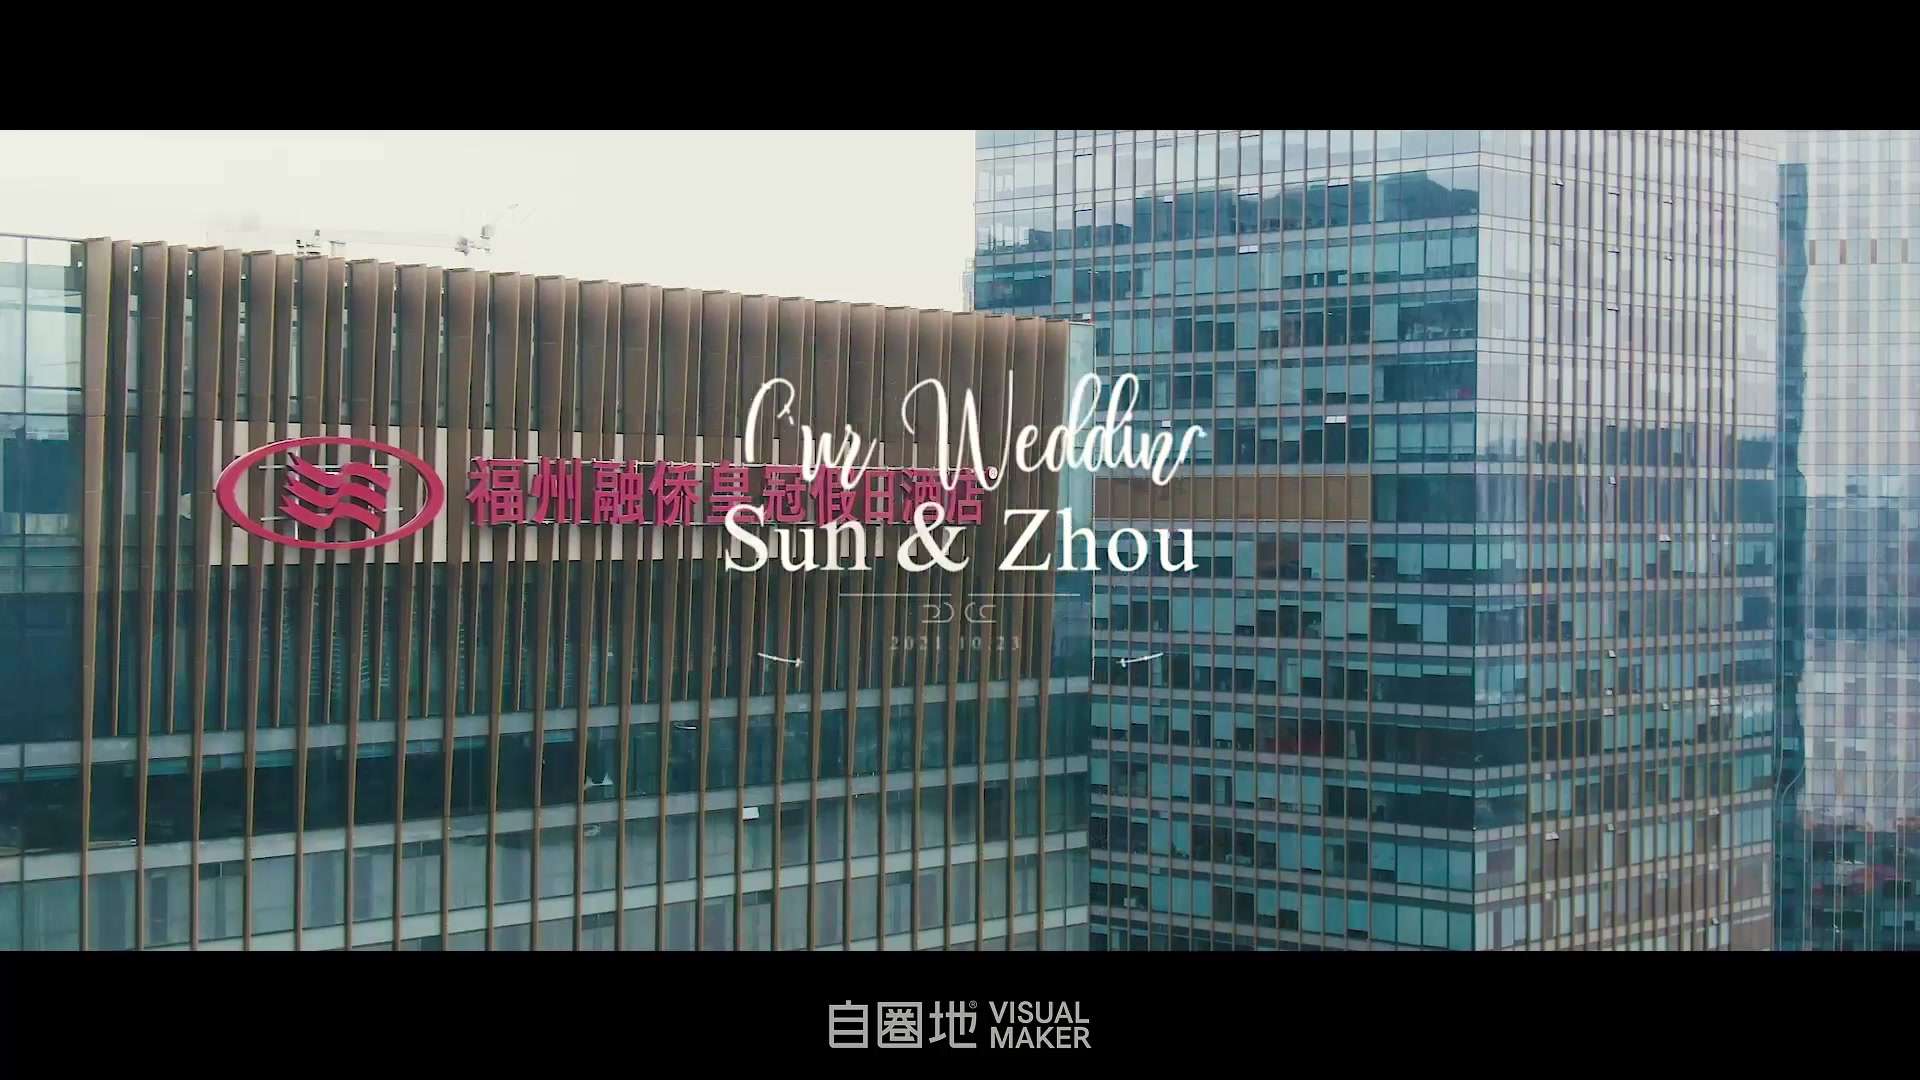 婚礼微电影 | Sun & Zhou 当你与有趣的灵魂相遇